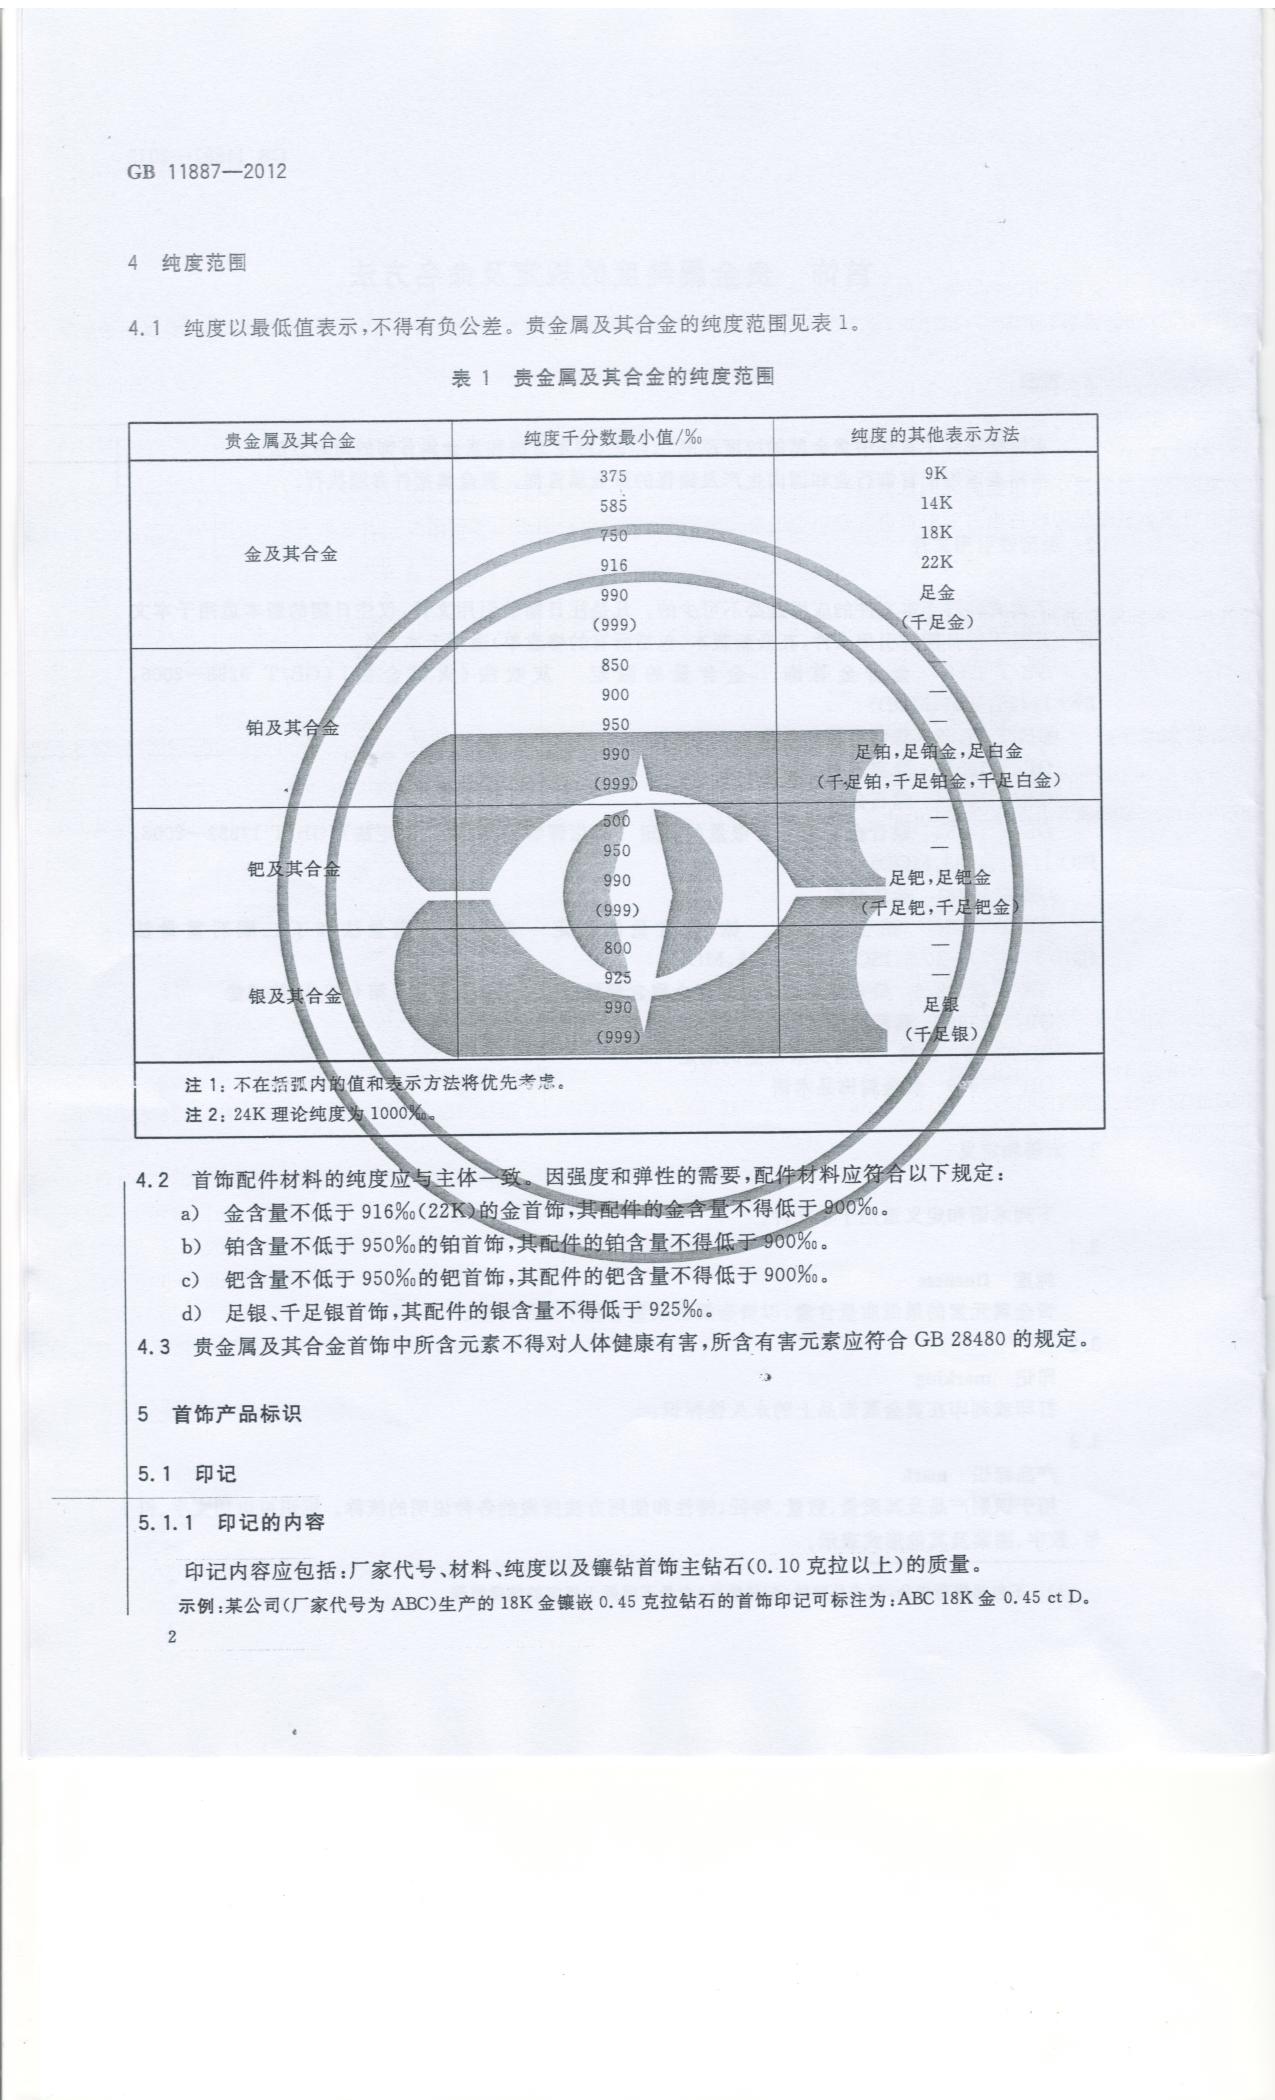 中華人民共和國貴金屬純度規定及命名方法